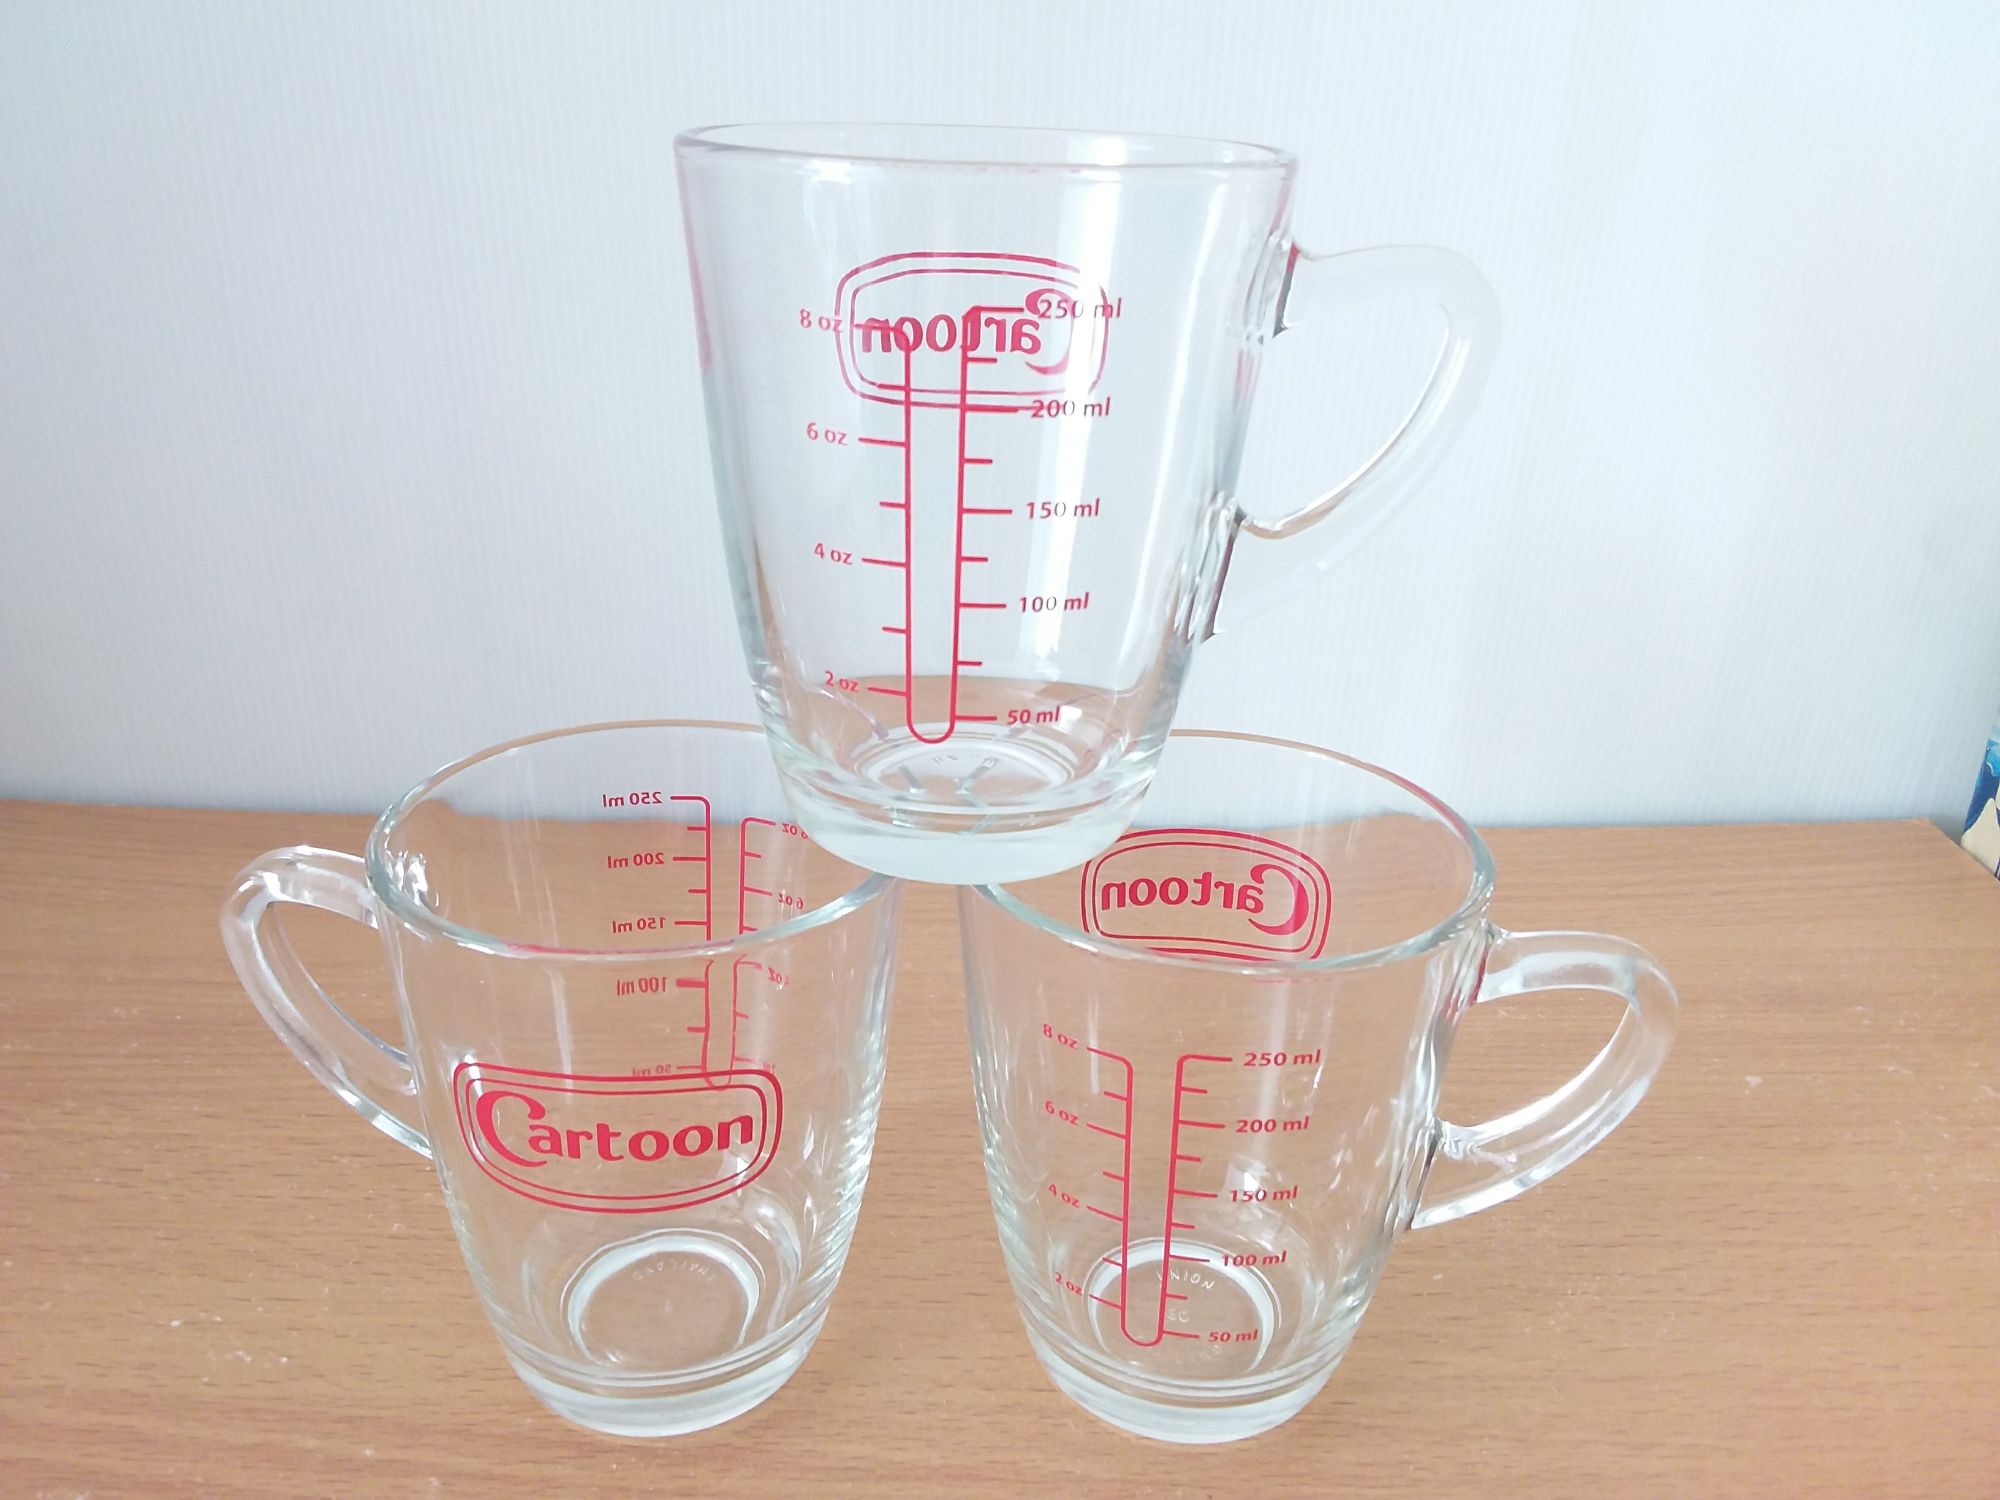 แก้ว Cartoon 3 ใบ แก้วตวง แก้วชงกาแฟ แก้วน้ำ แก้วทำเครื่องดื่ม สเกลมาตรฐาน ขนาด 8 oz /250ml.